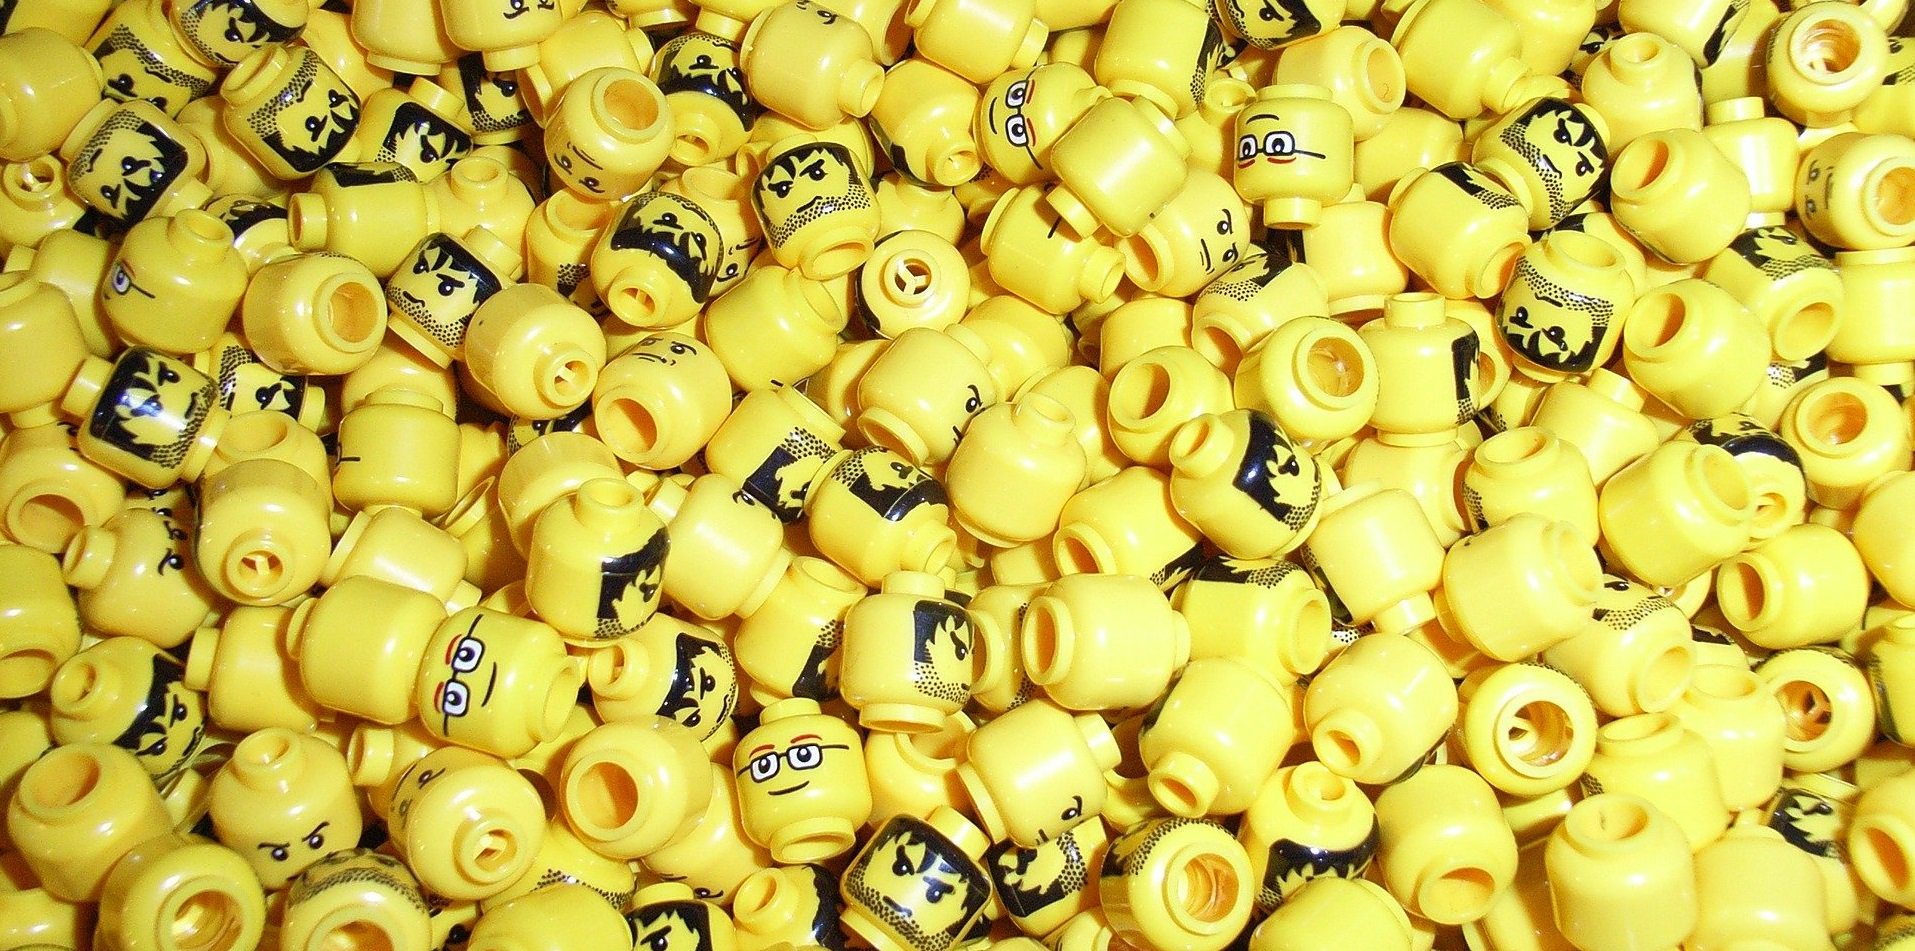 Що буде, якщо проковтнути голову чоловічка LEGO?